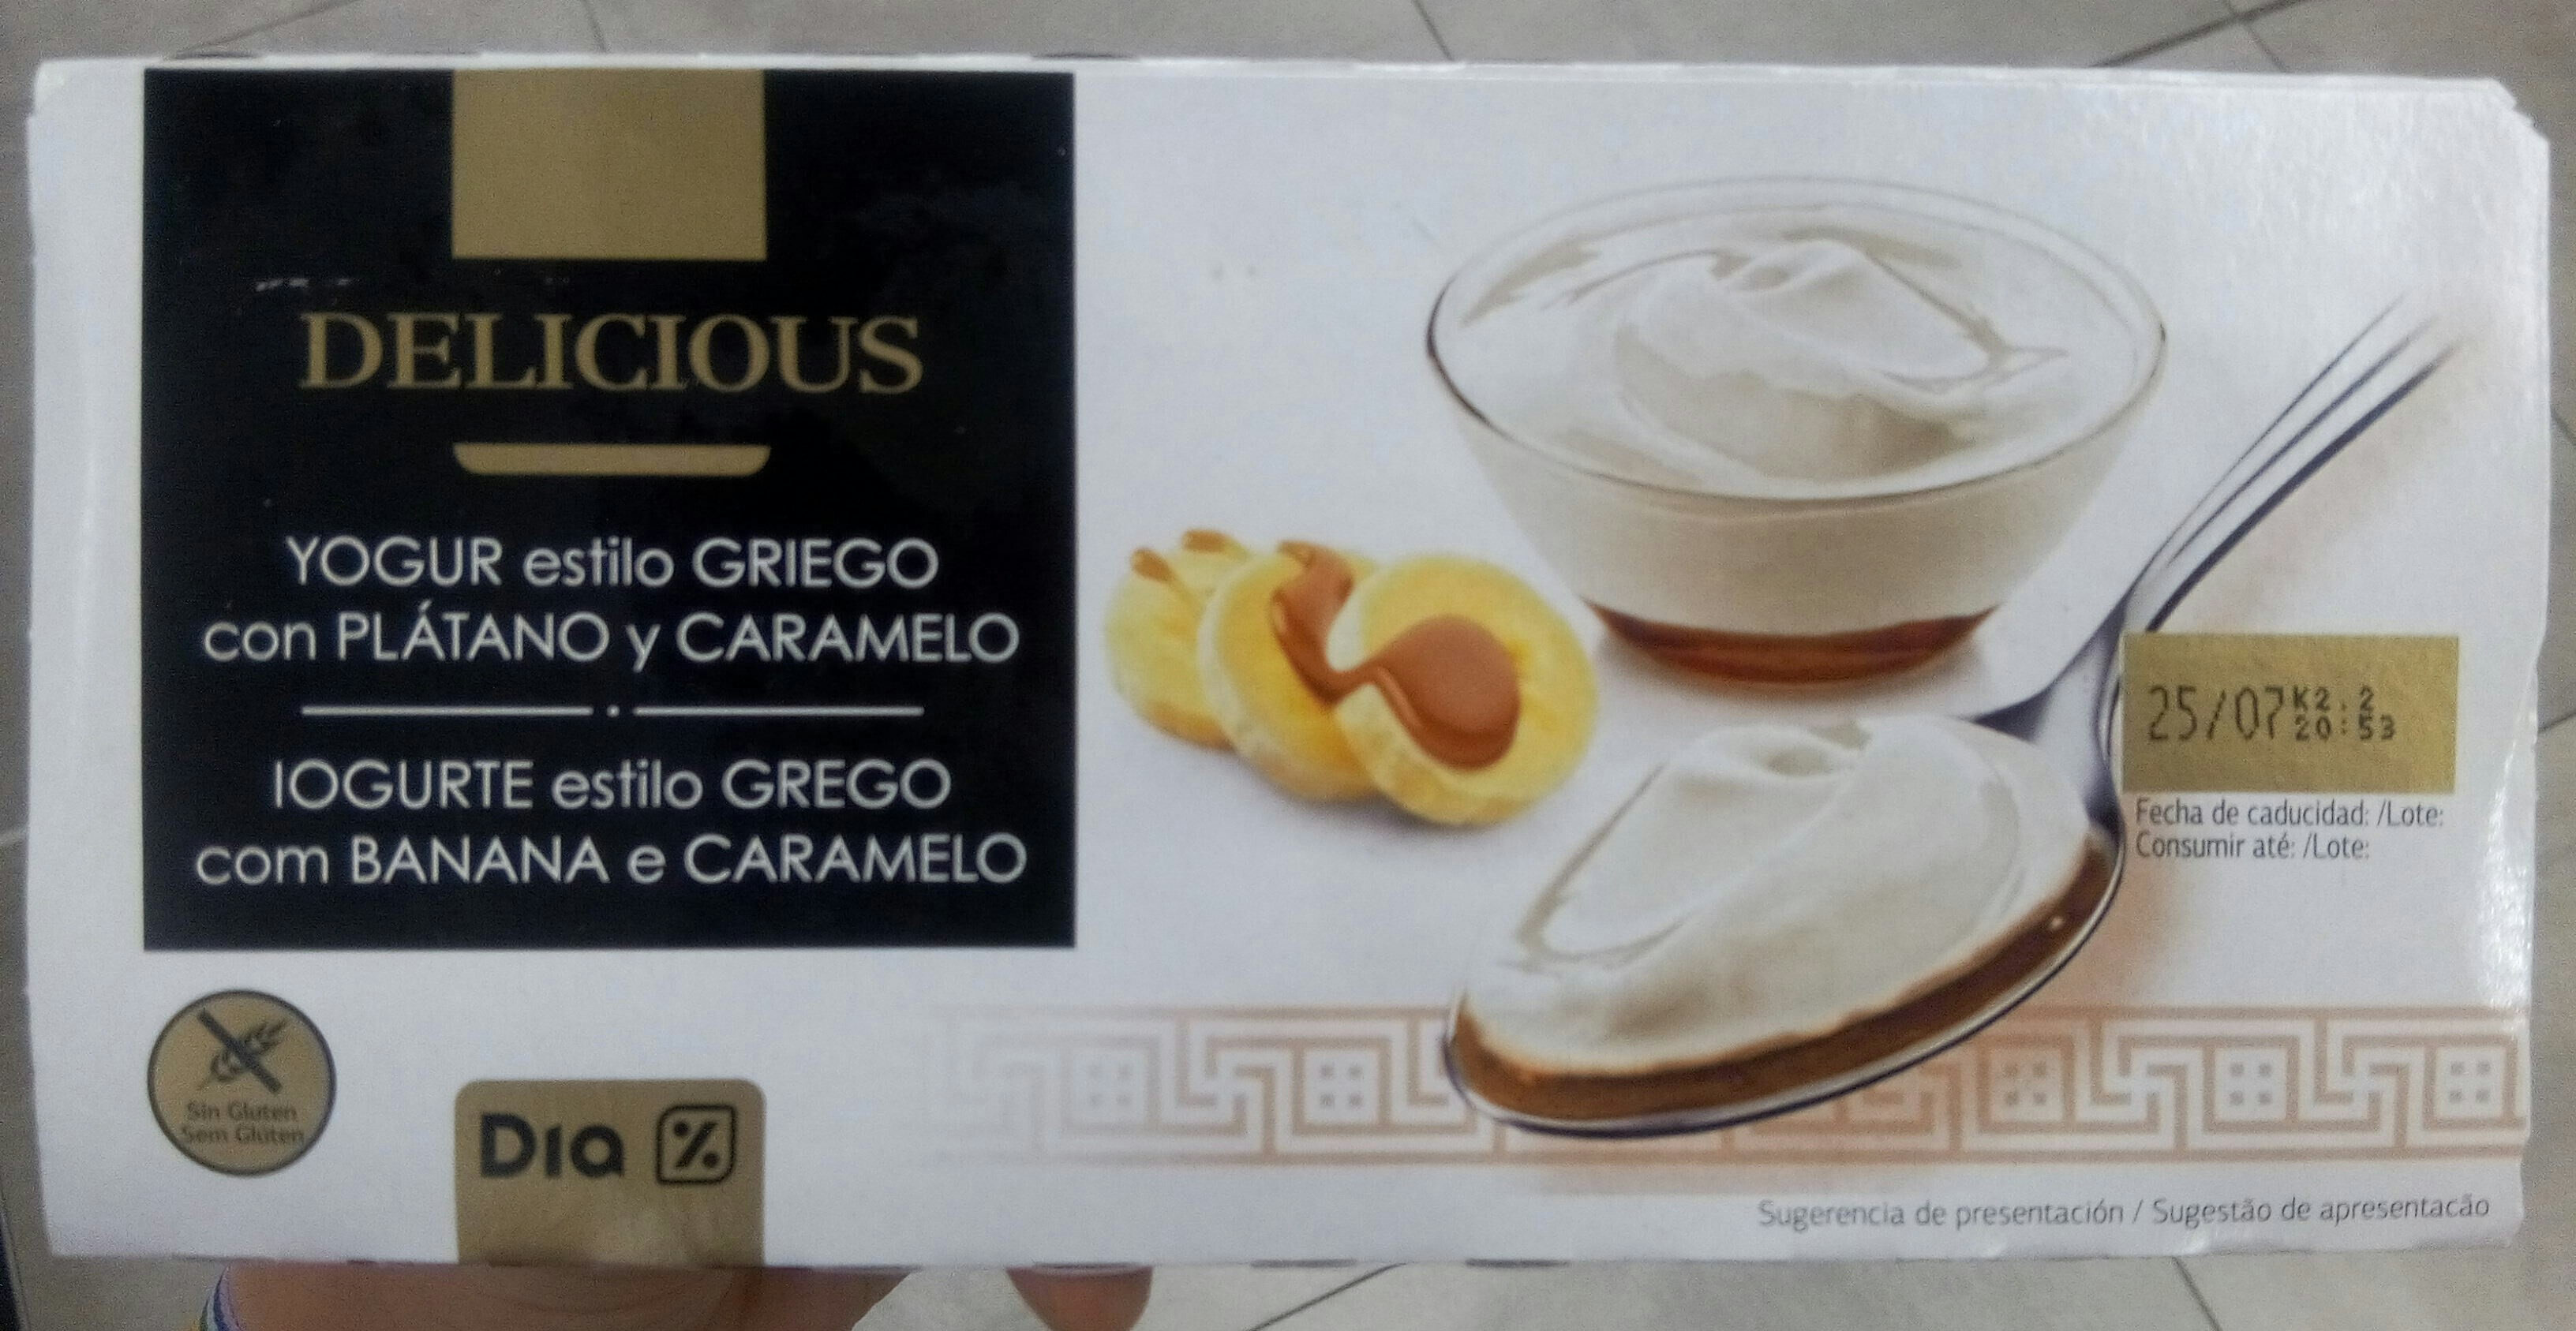 Delicious yogur estilo Griego con plátano y caramelo - Producto